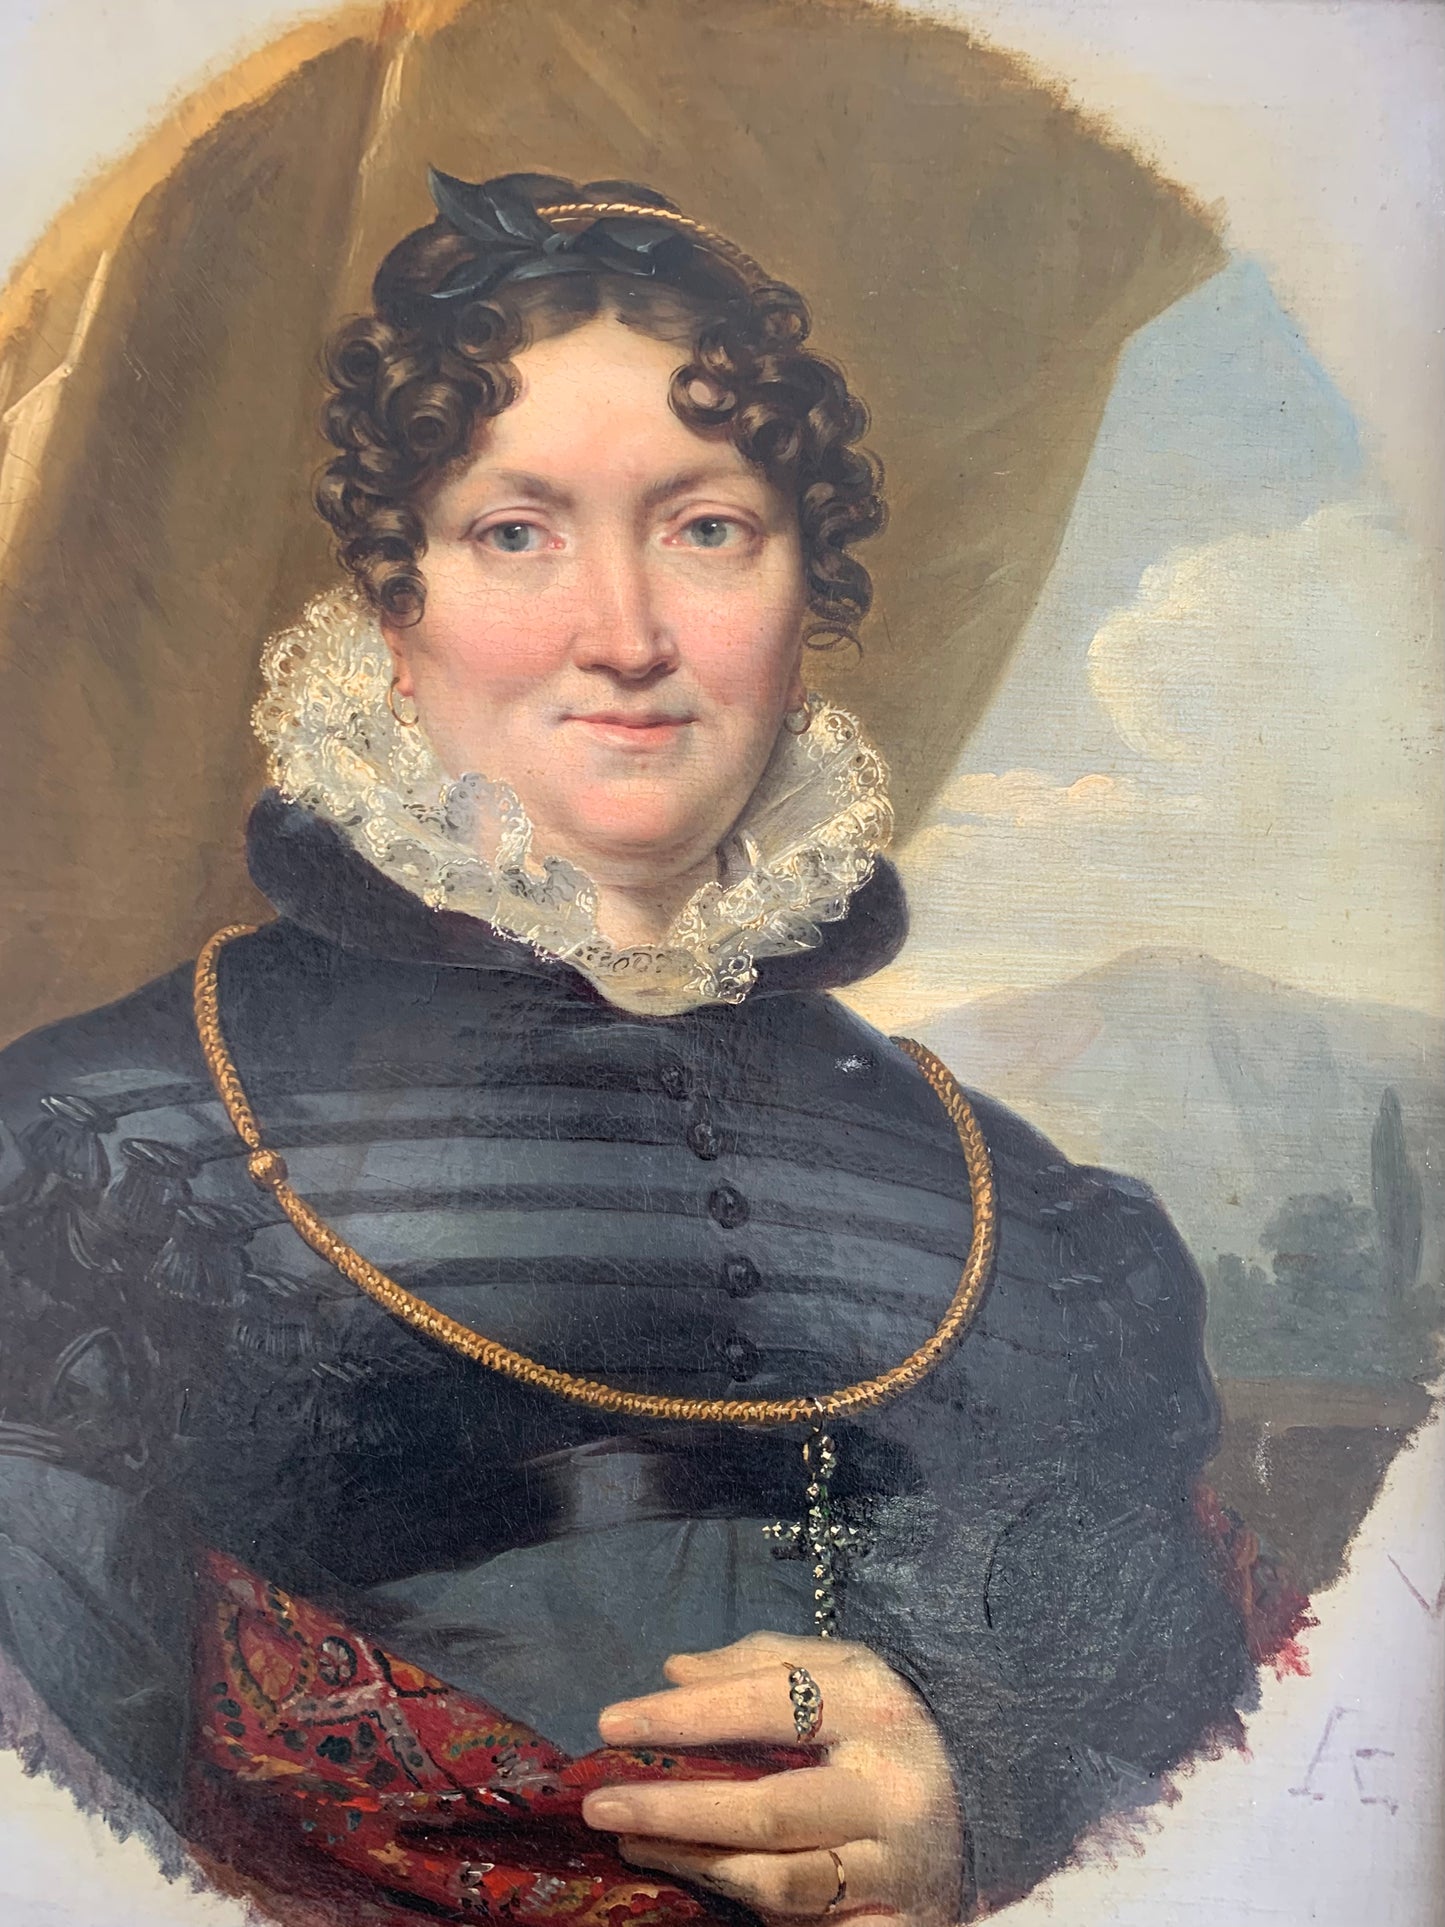 Ca. 1820 Portrait of a Woman. Léon Cogniet (1794-1880, Paris), attributed.